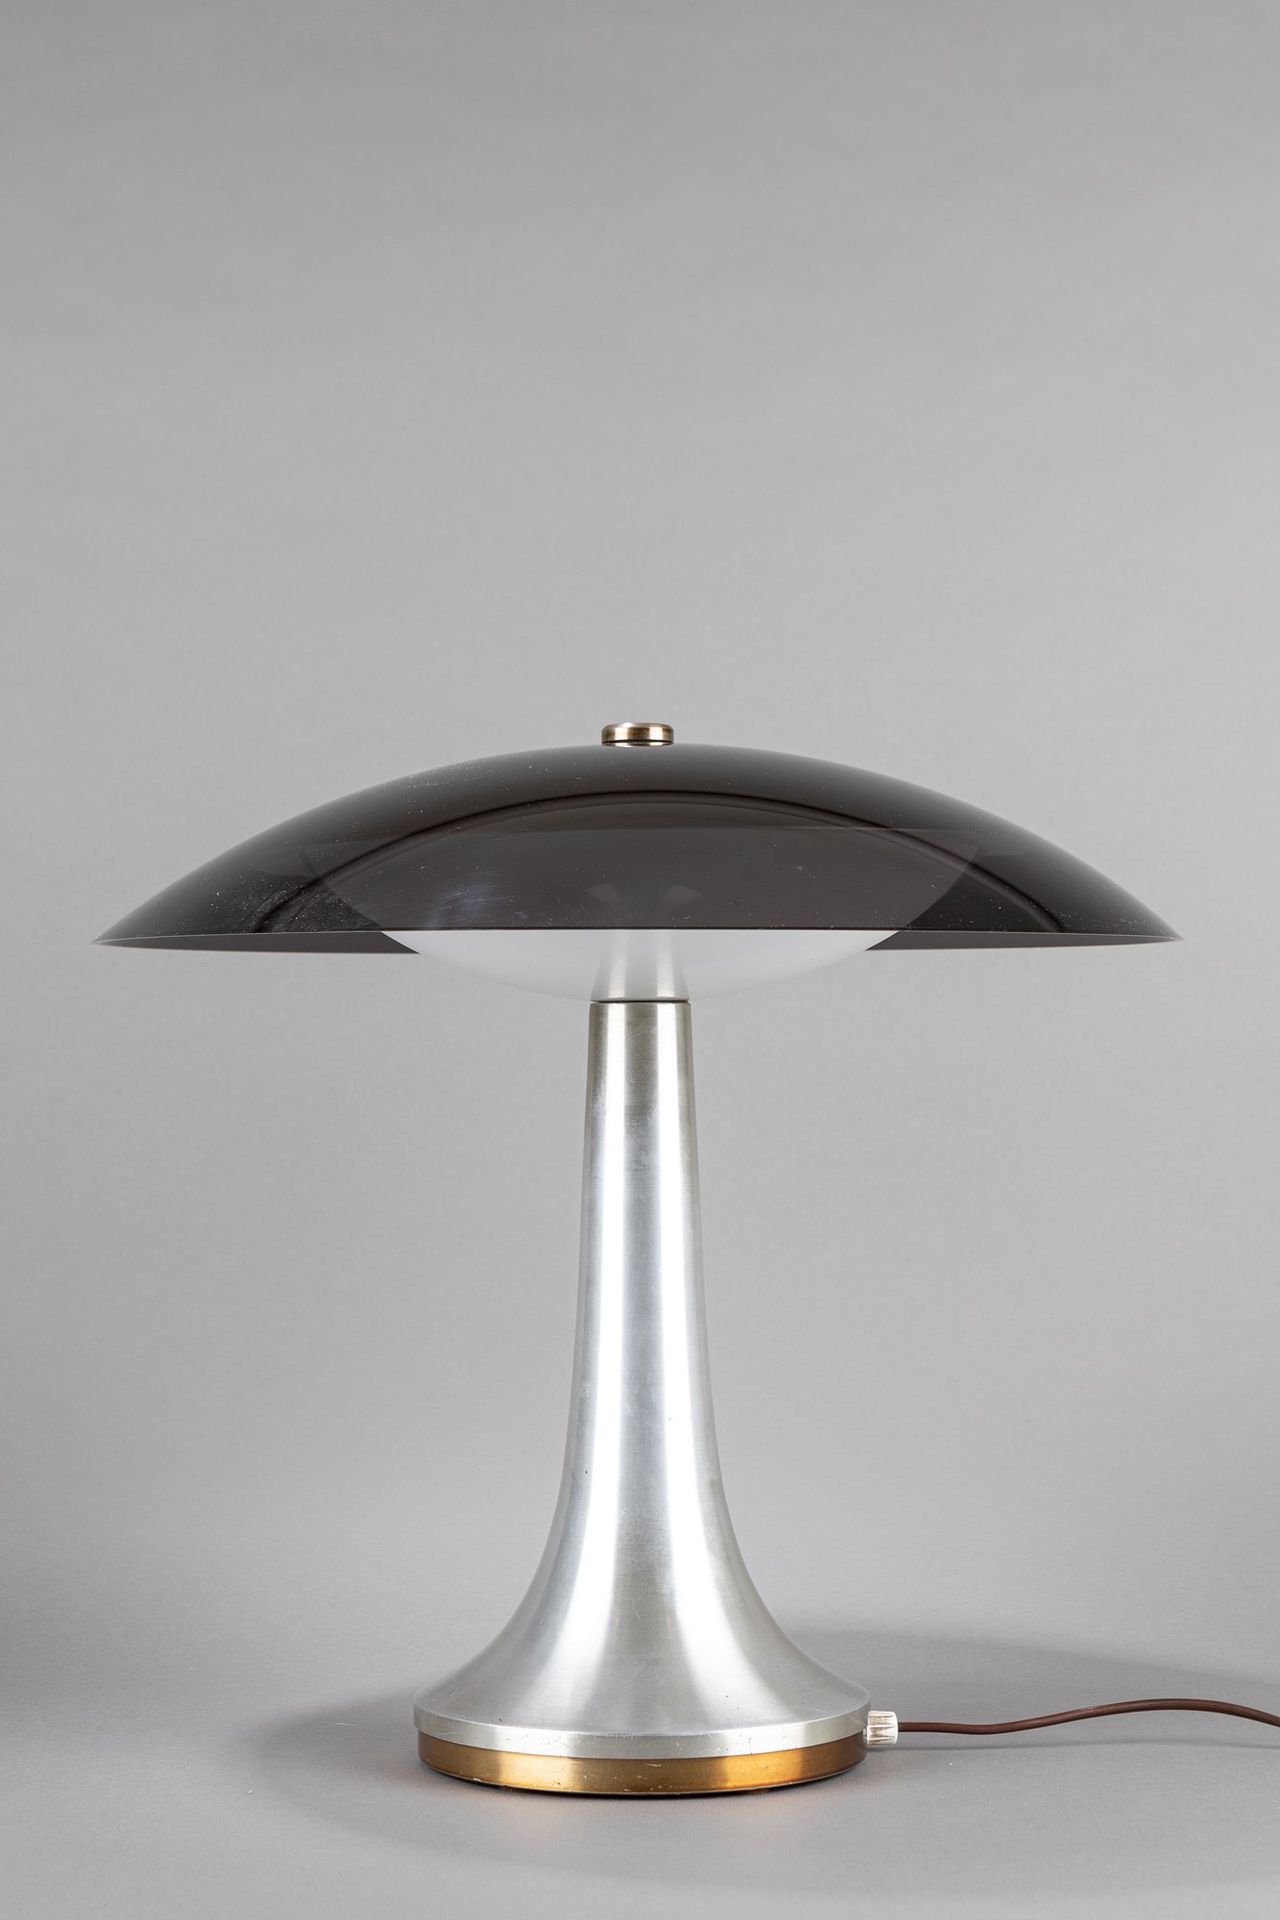 Stilux Tischleuchte, 1960 ca.

H 45 cm
gebürstetes Messing, Aluminium, Plexiglas&hellip;